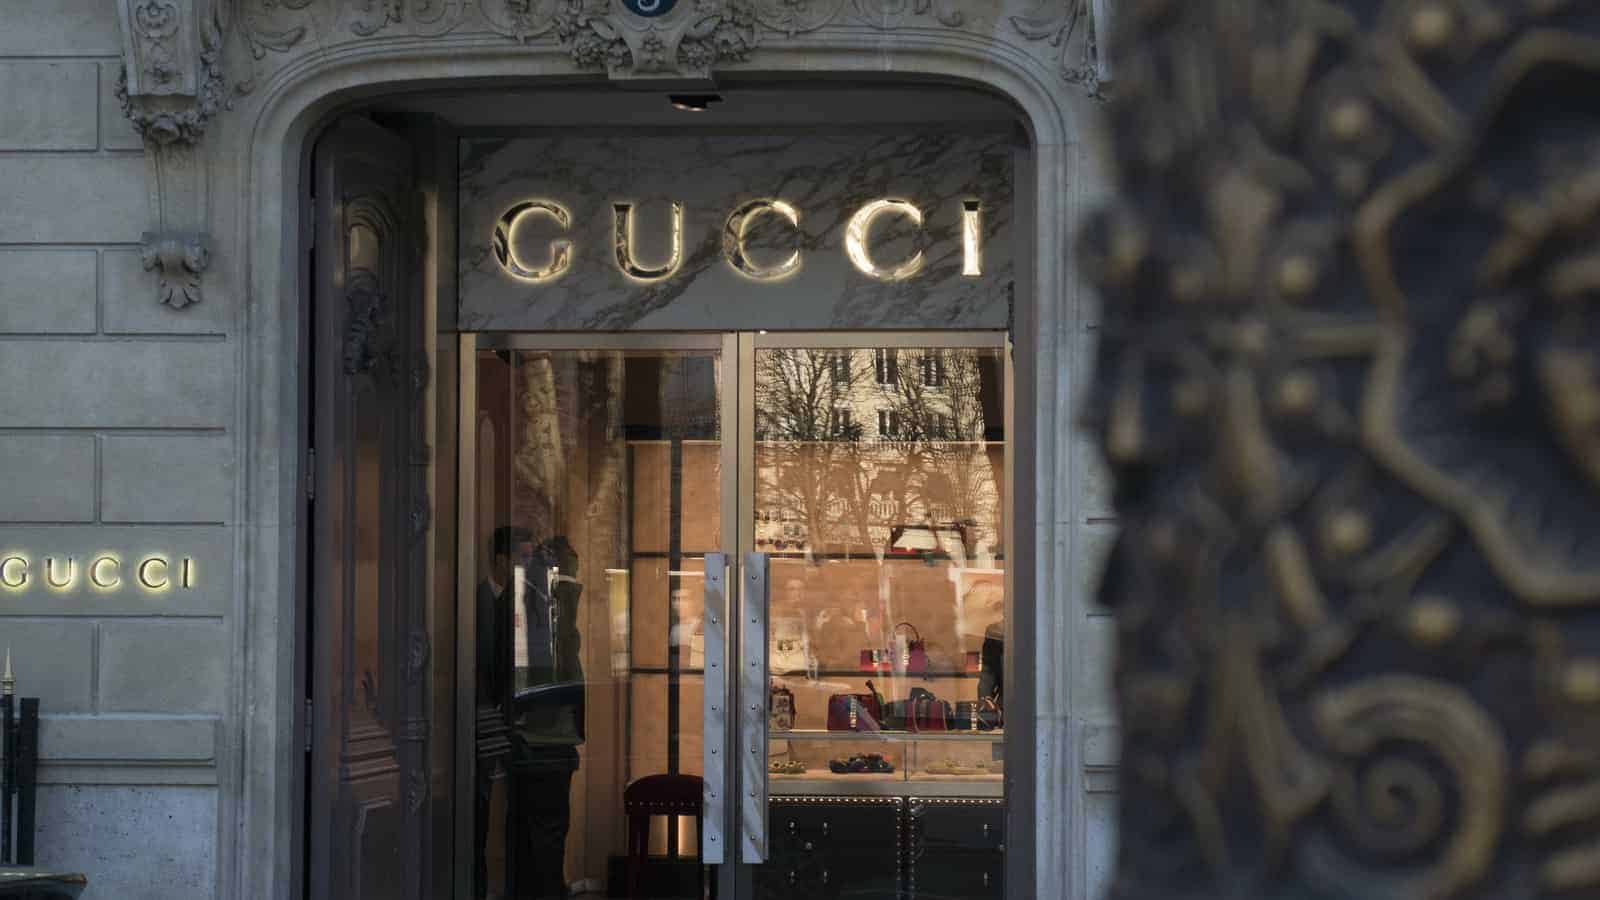 La célèbre marque de luxe Gucci acceptera les paiements Bitcoin et Ethereum aux États-Unis